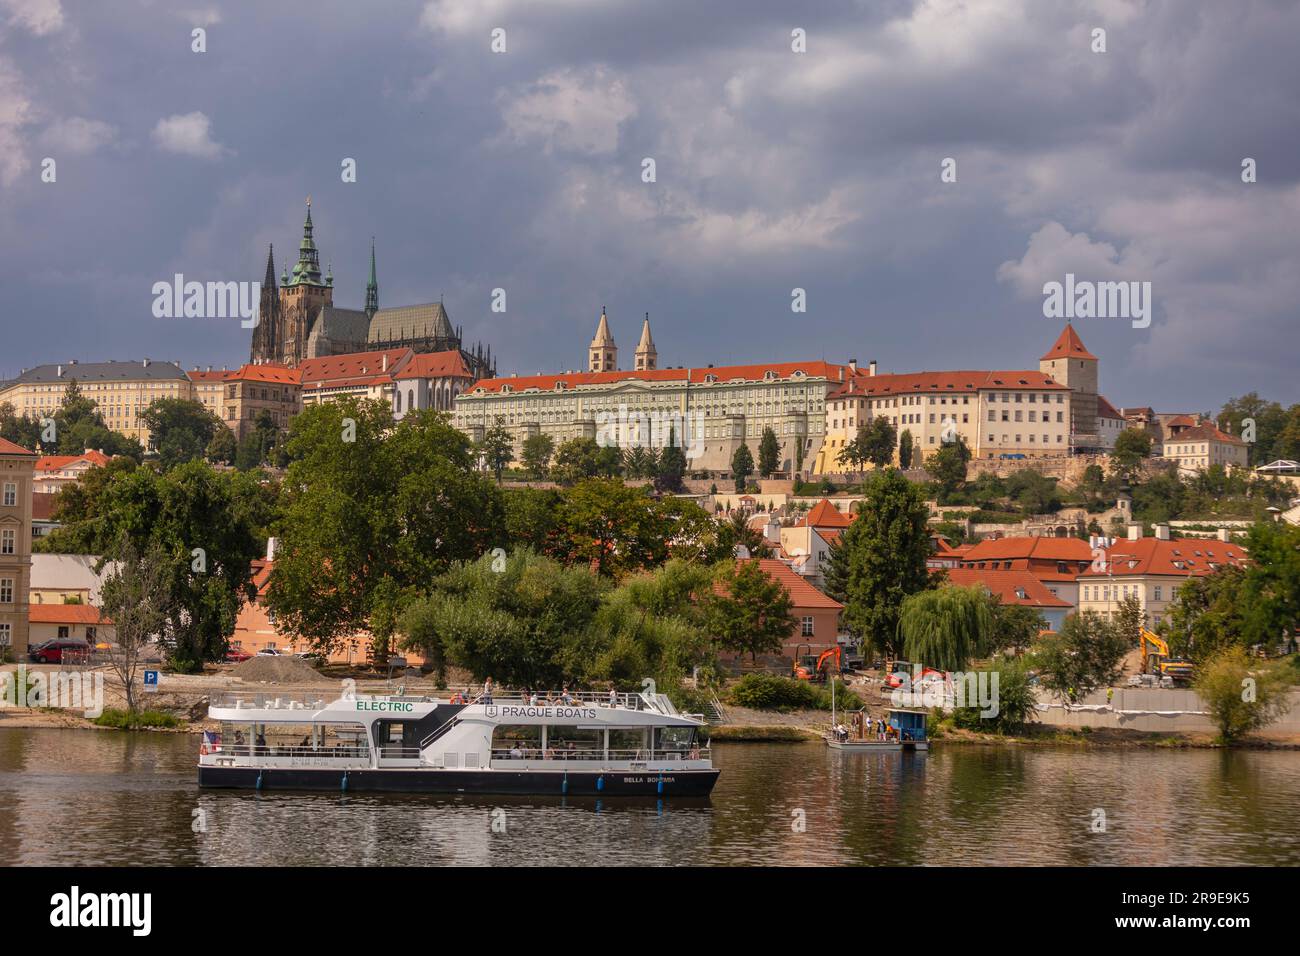 PRAGUE, RÉPUBLIQUE TCHÈQUE, EUROPE - croisière en bateau sur la Vltava. Cathédrale Saint-Vitus, en haut à gauche, et château de Prague. Banque D'Images